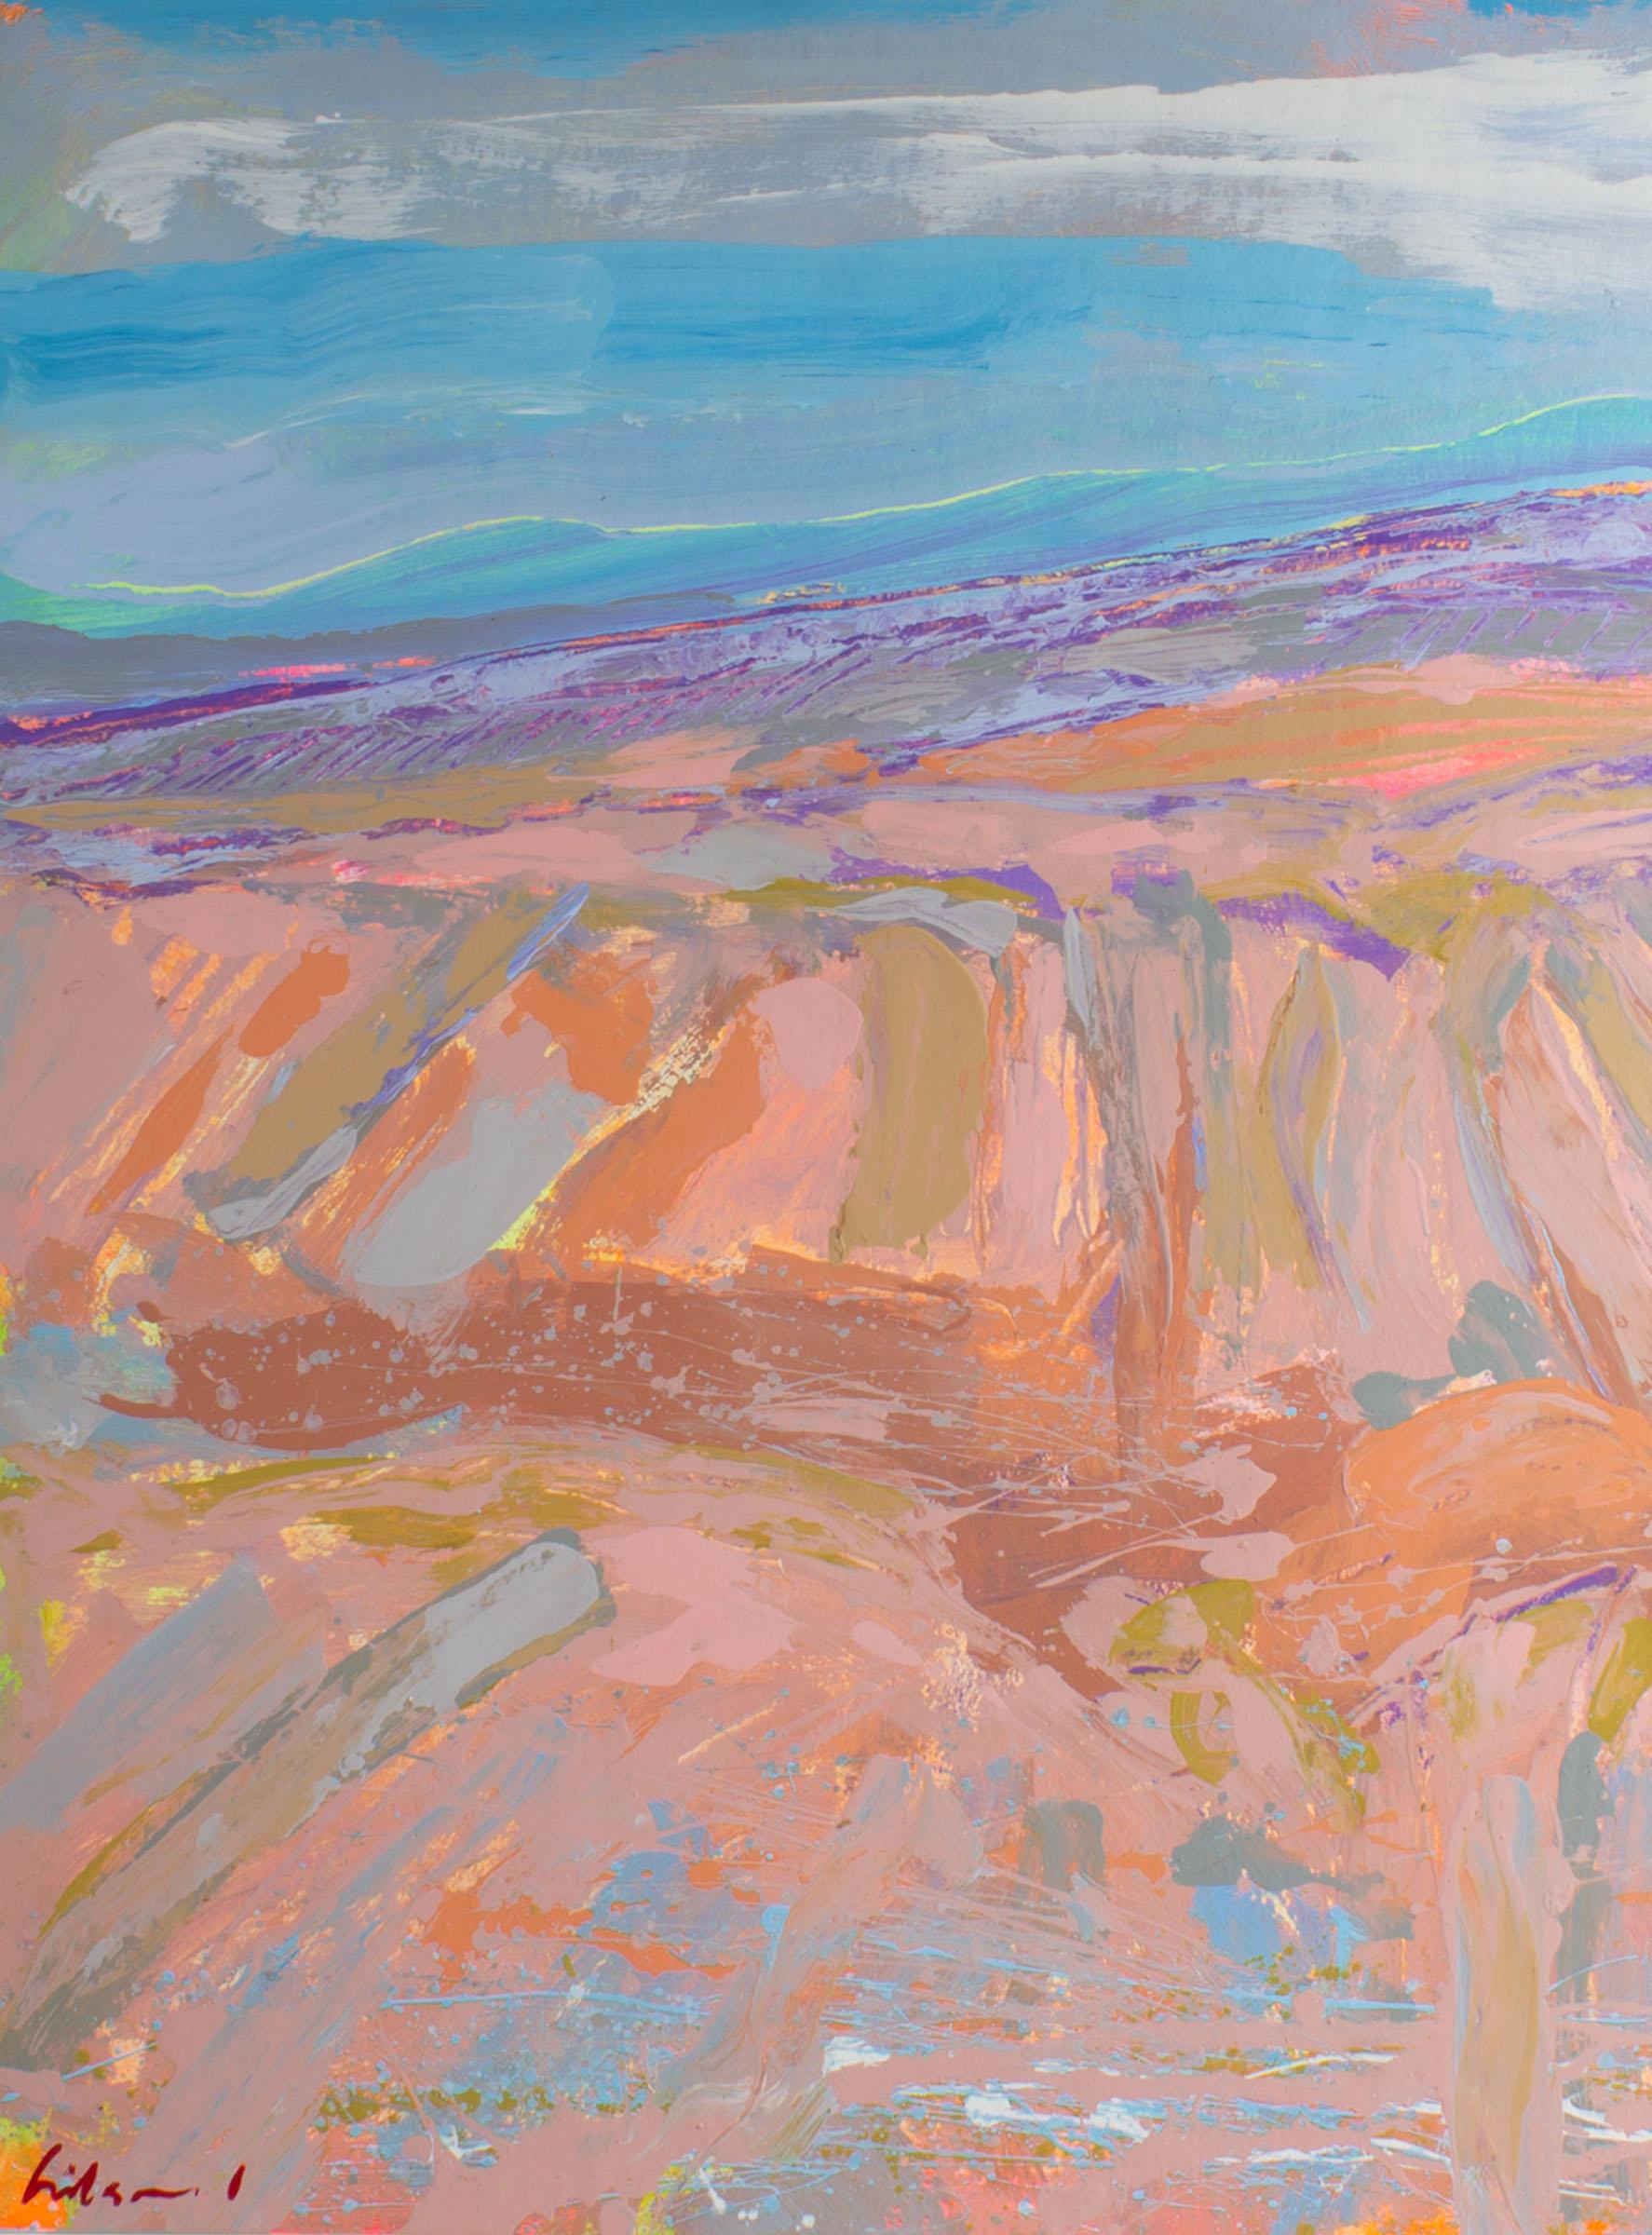 Ein abstraktes Landschaftsgemälde in Acryl auf Papier des amerikanischen Künstlers Harry Hilson (1935-2004). Gestische Linien fügen sich zu einer lebendigen abstrakten Landschaft mit einer Horizontlinie im Hintergrund und sanften rosa Feldern im